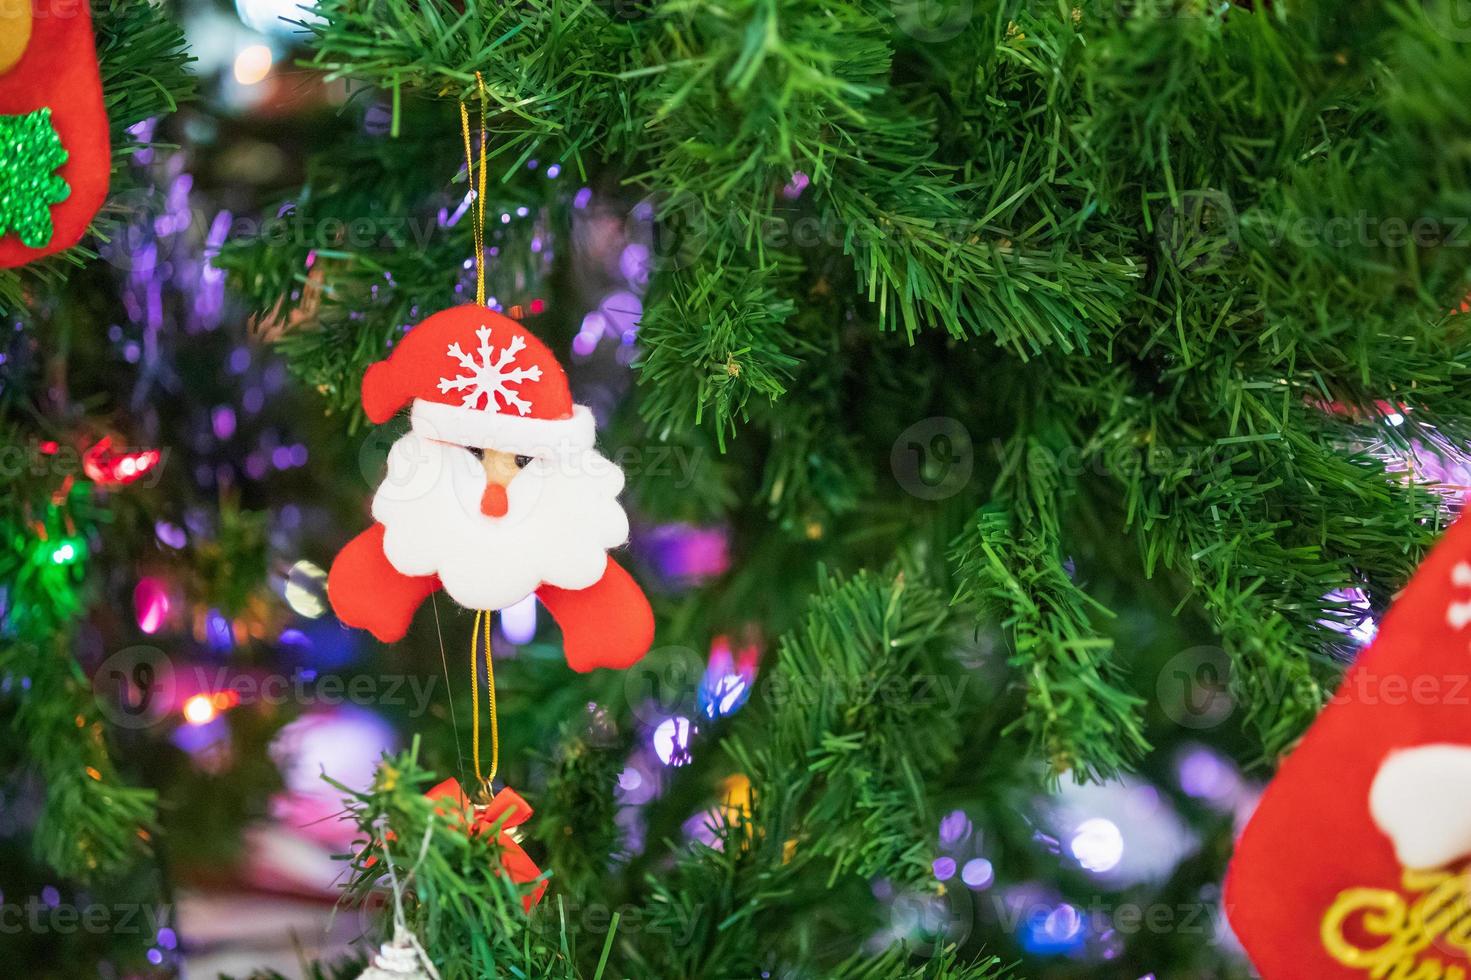 dekorerad jul grannlåt på gran träd ny år högtider bakgrund foto